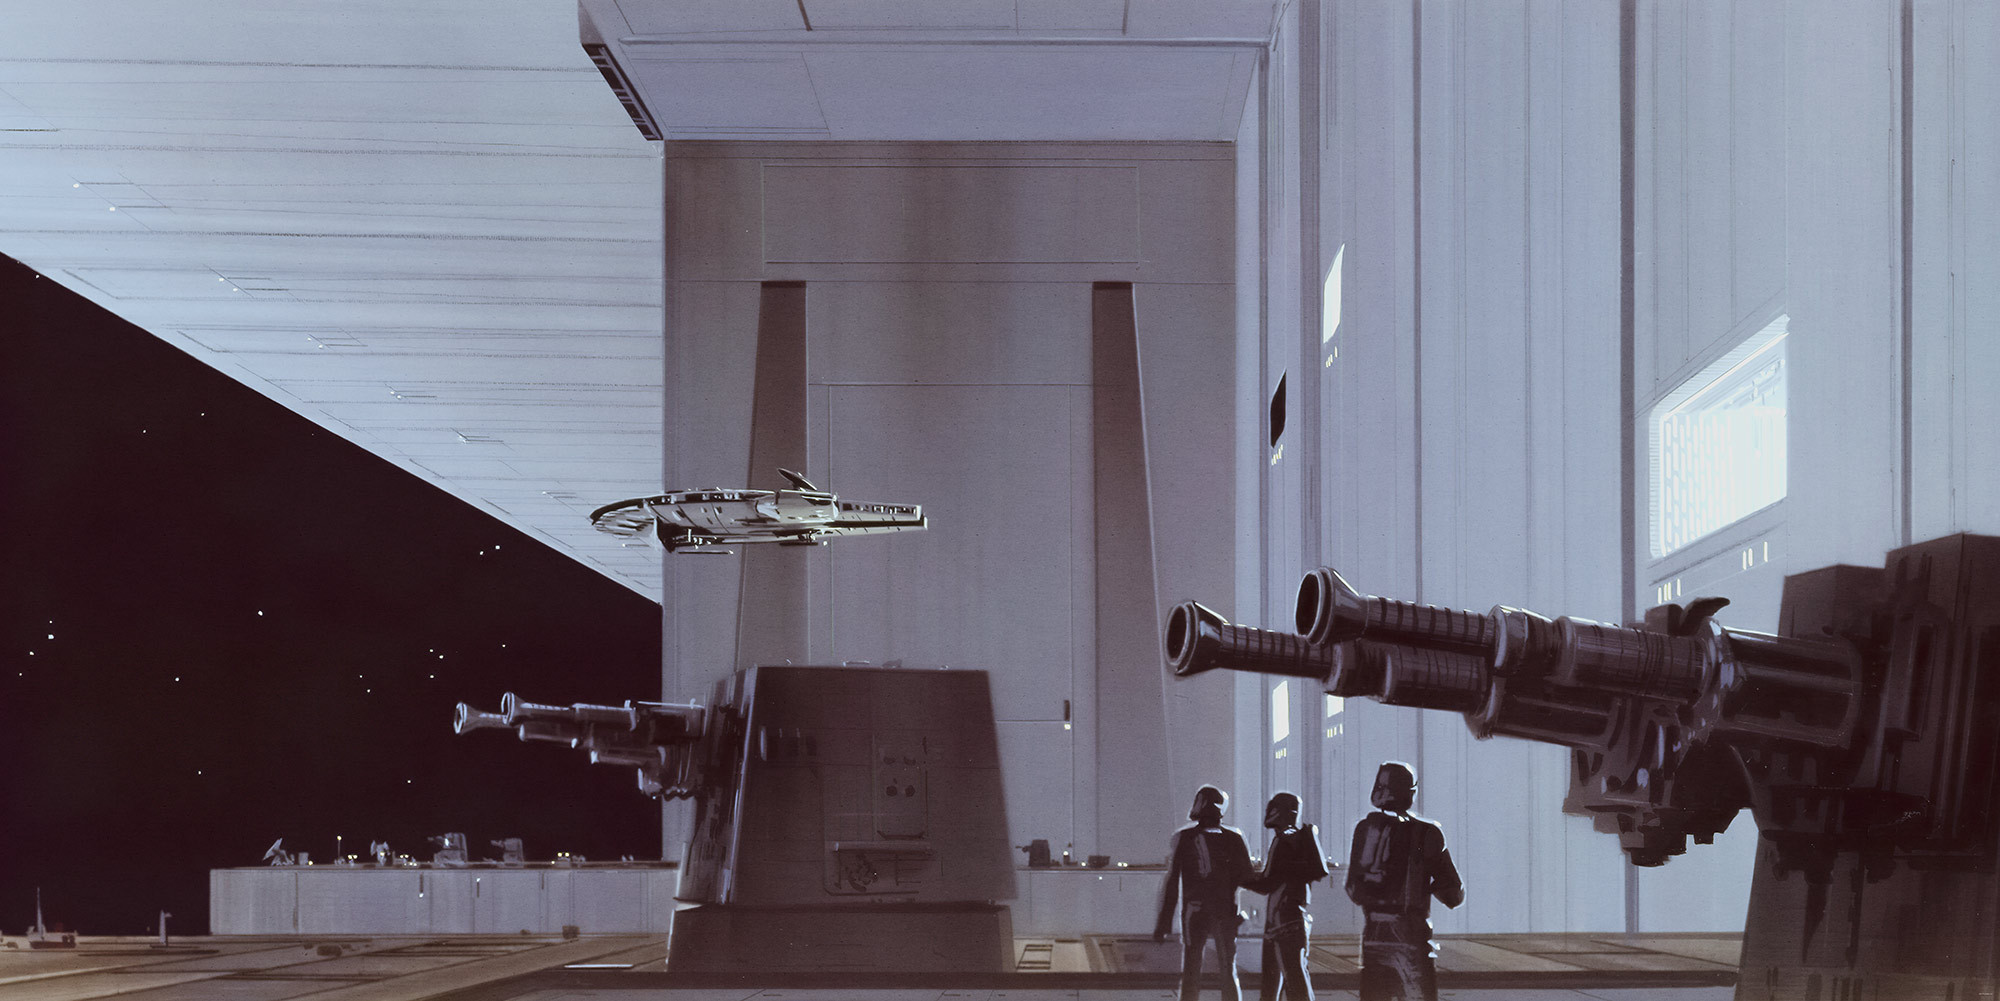 Star Wars Classic Rmq Death Star Hangar - Concept Star Wars Art - HD Wallpaper 